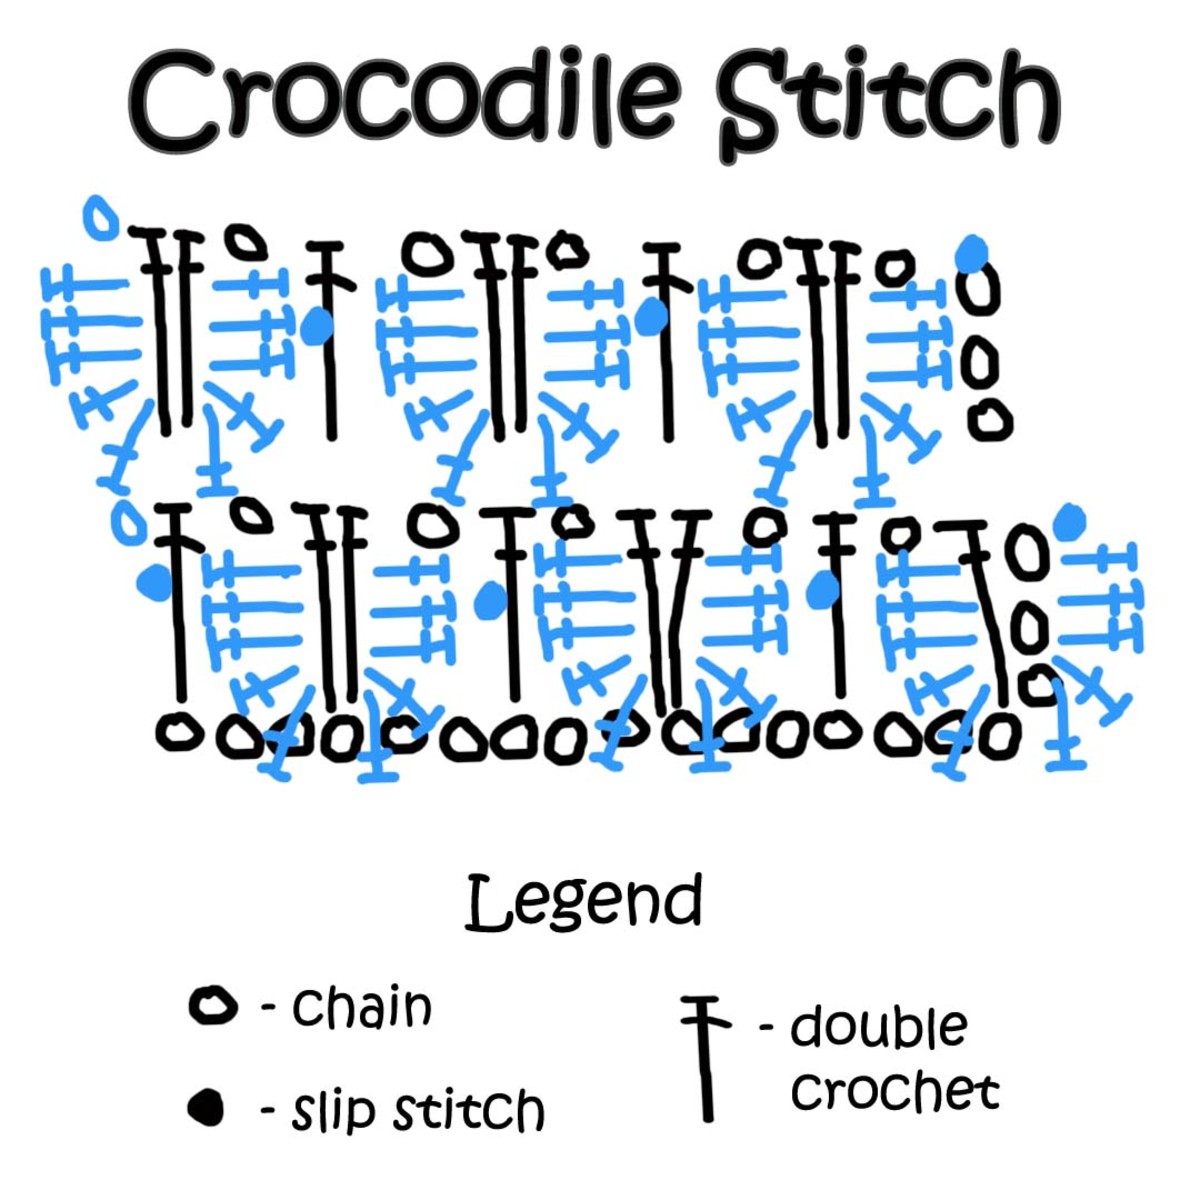 Figure 5: The crocodile crochet stitch pattern - black symbols represents odd rows while blue represents even rows.